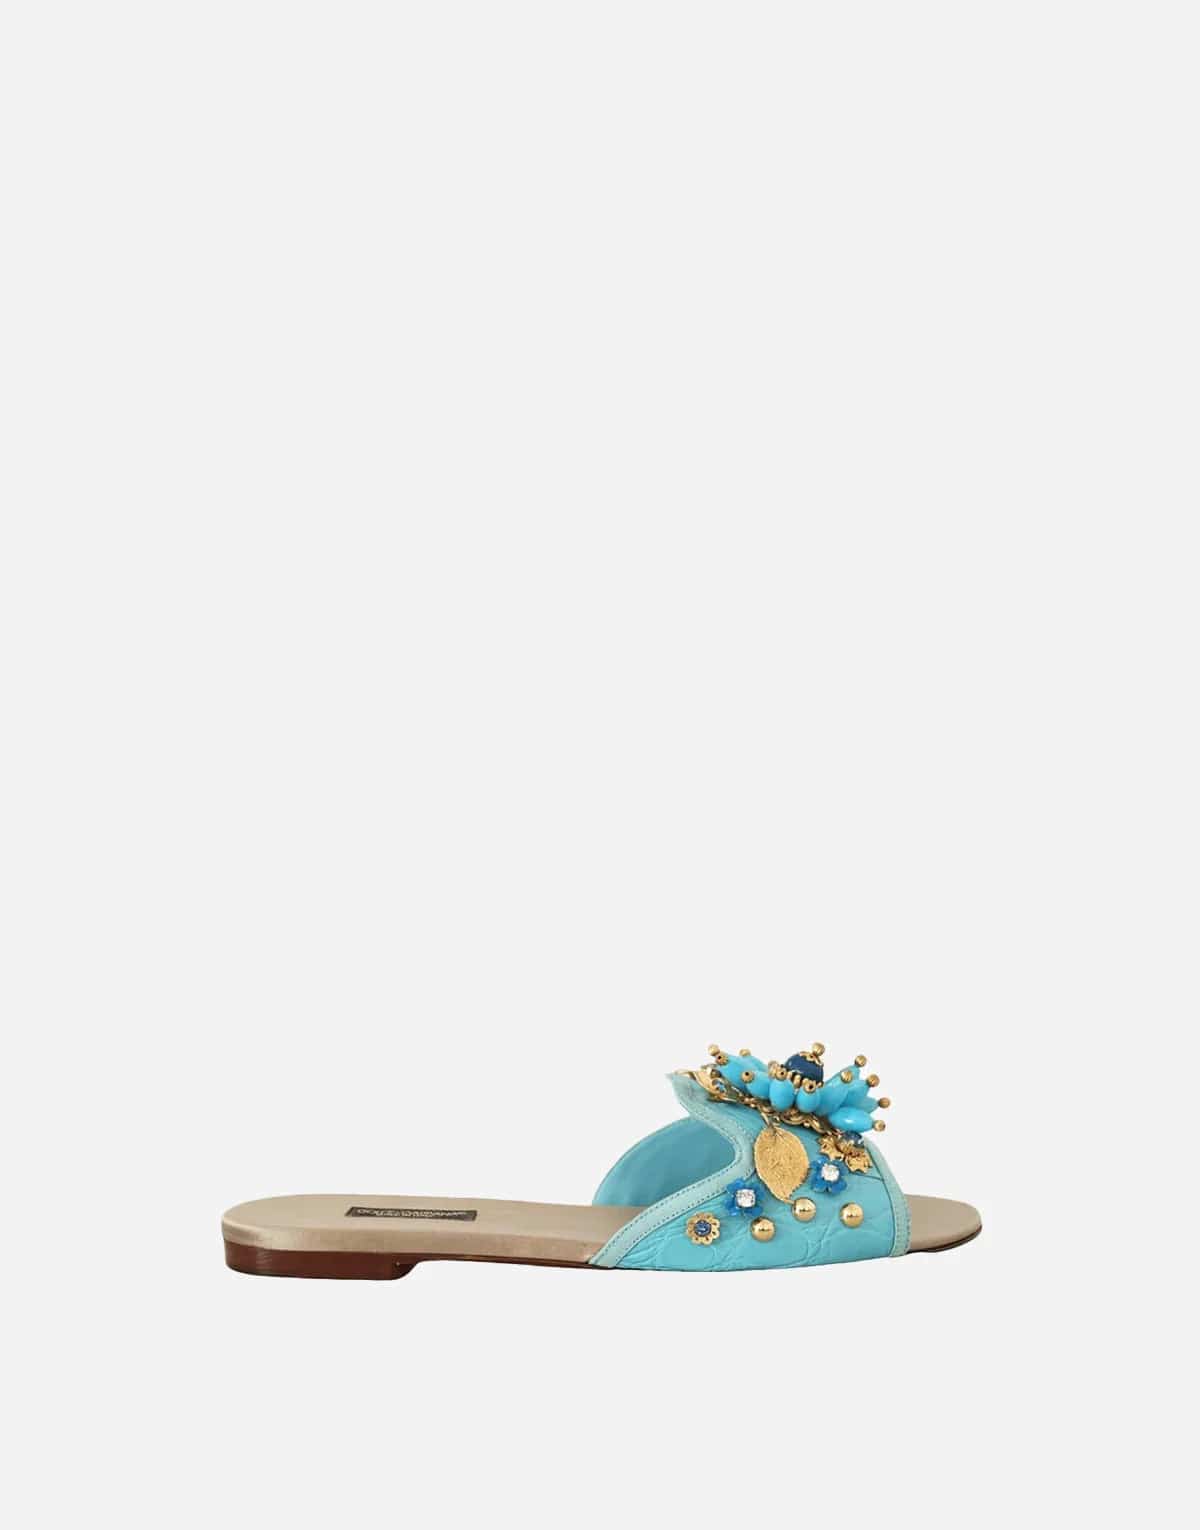 Dolce & Gabbana Bianca Floral Embellished Sandals